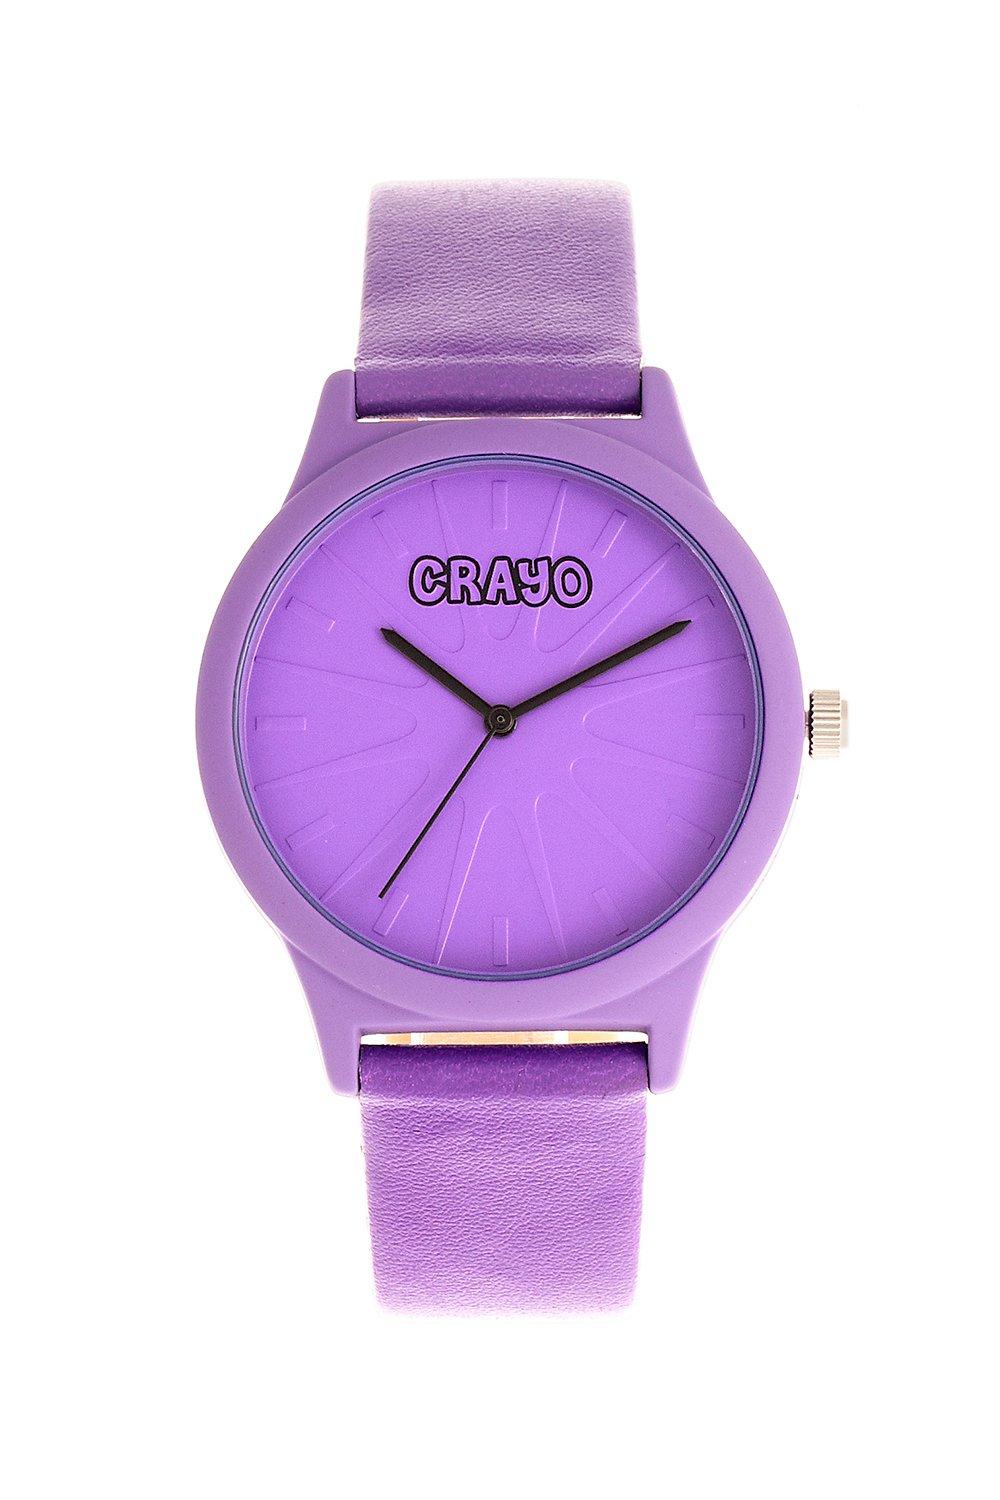 цена Часы Сплат унисекс Crayo, фиолетовый